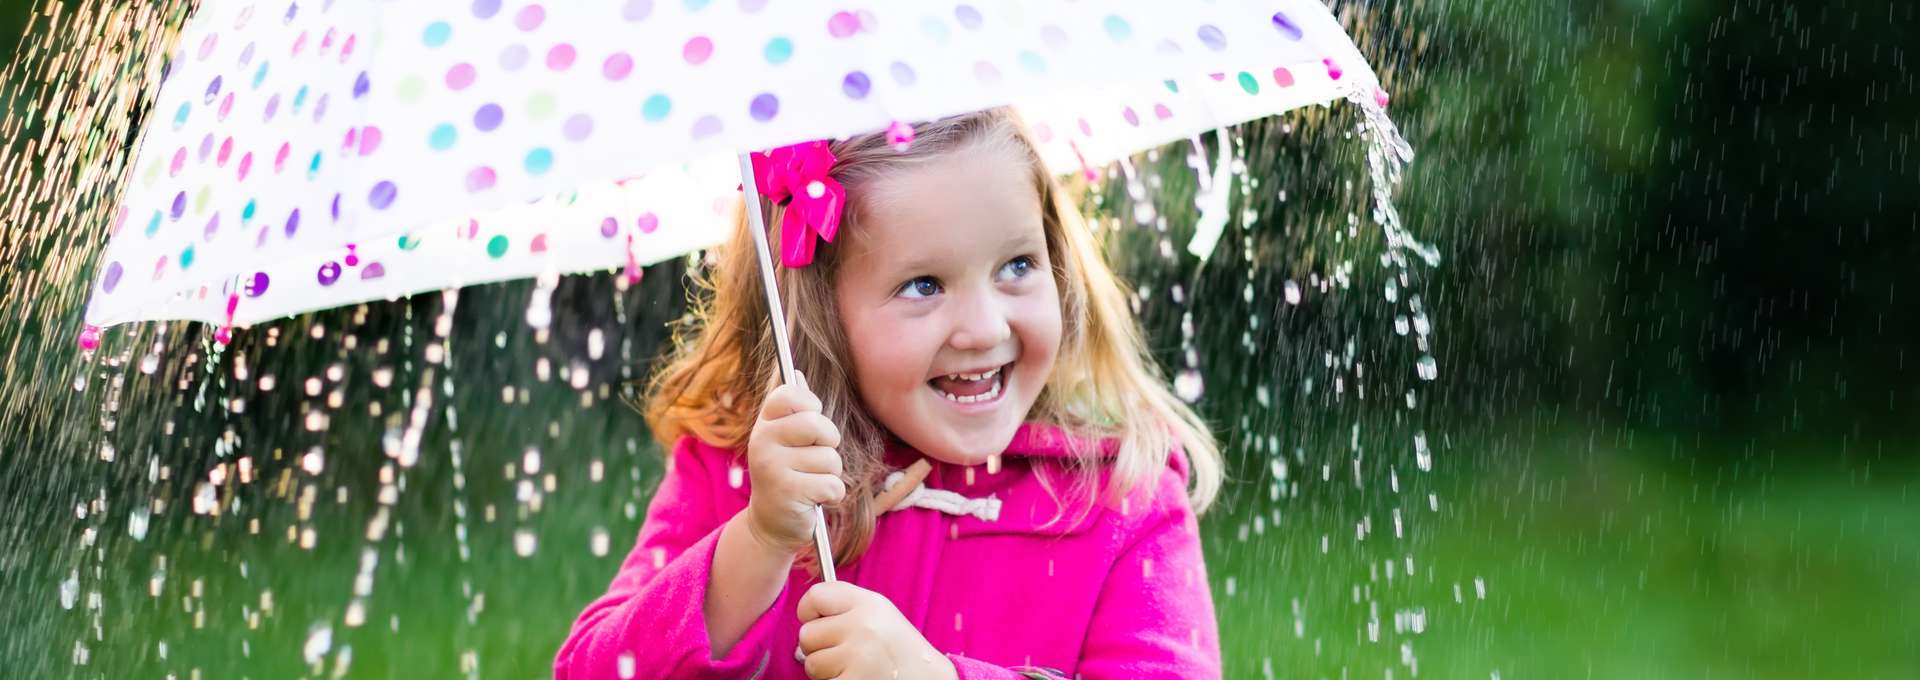 en flicka i rosa jacka som står med ett paraply i regnet